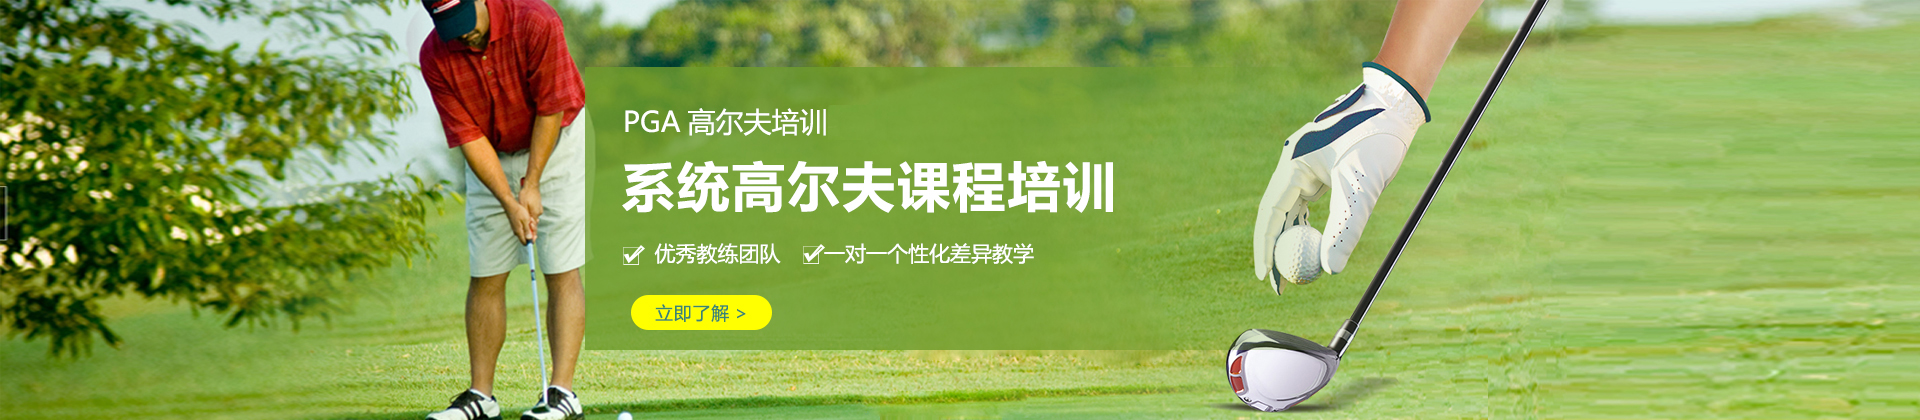 上海PGA高尔夫学院